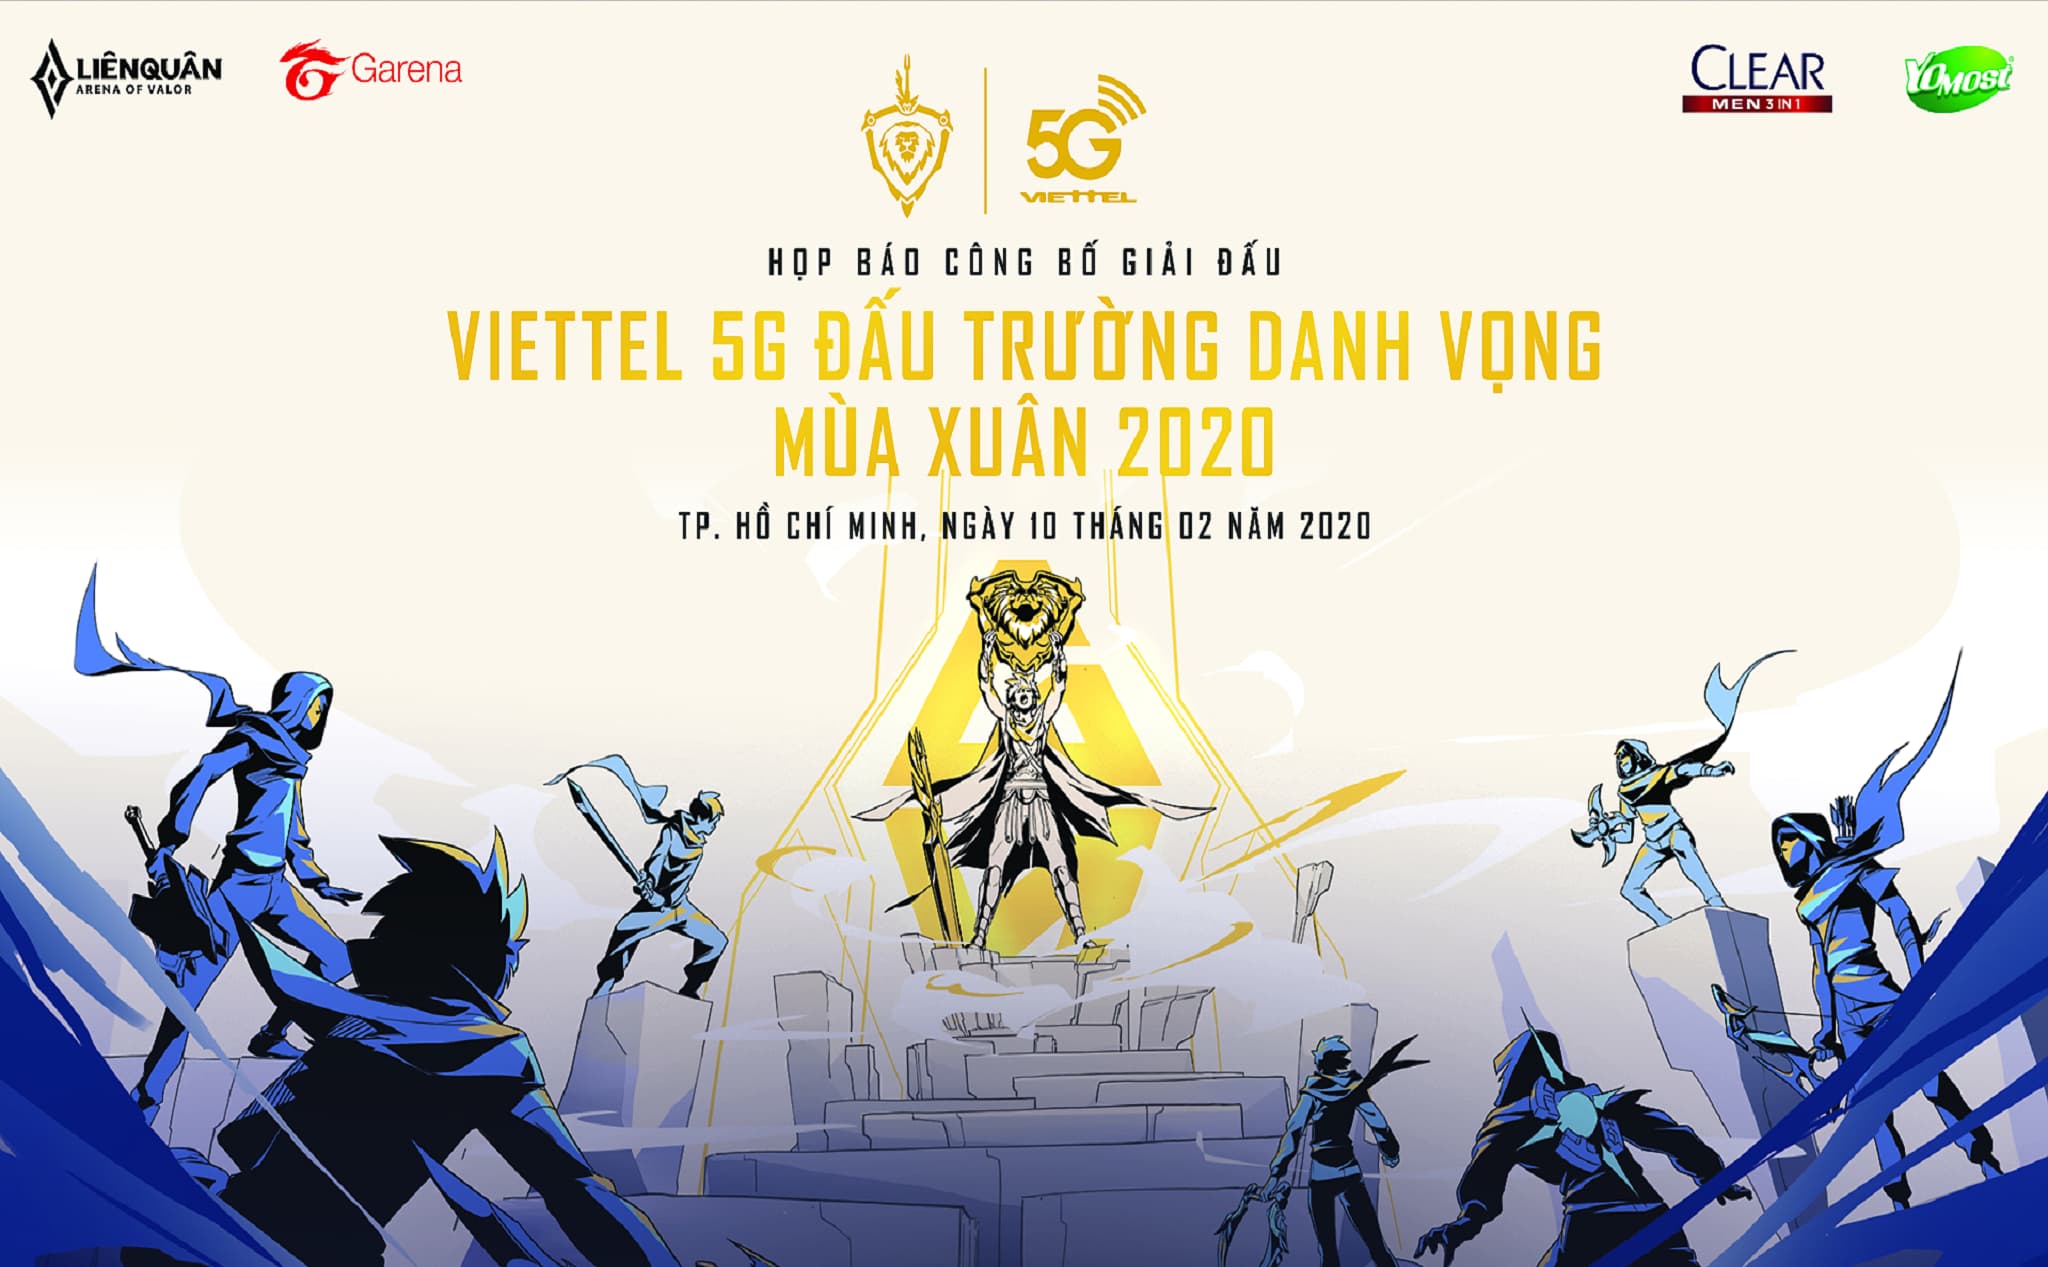 [QC] Công bố giải chuyên nghiệp Liên Quân Mobile Viettel 5G đấu trường danh vọng mùa xuân 2020